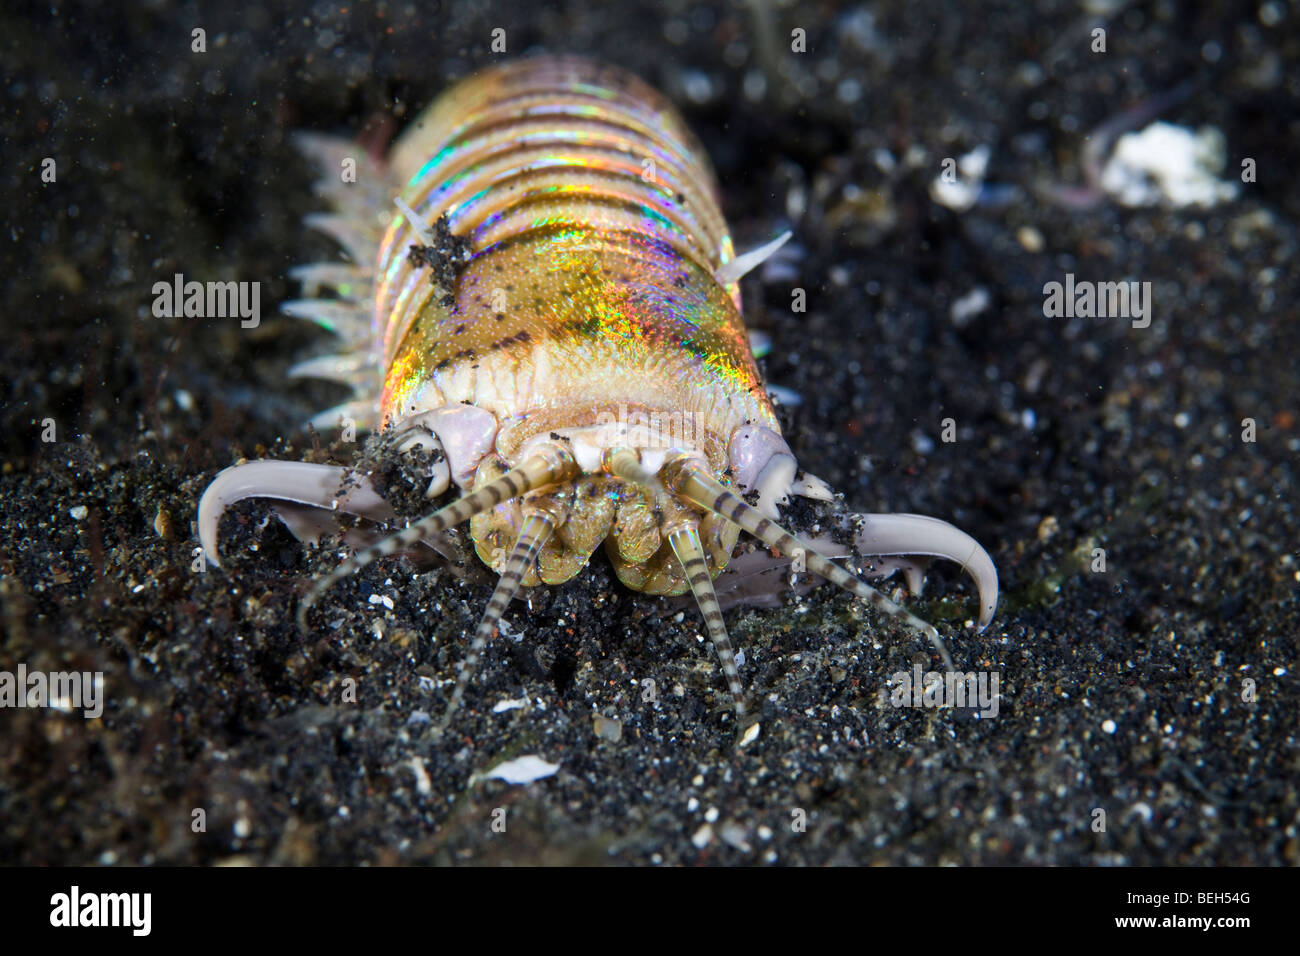 Bobbit Worm, Eunice aphroditois, Sulawesi, Lembeh Strait, Indonesia Stock Photo